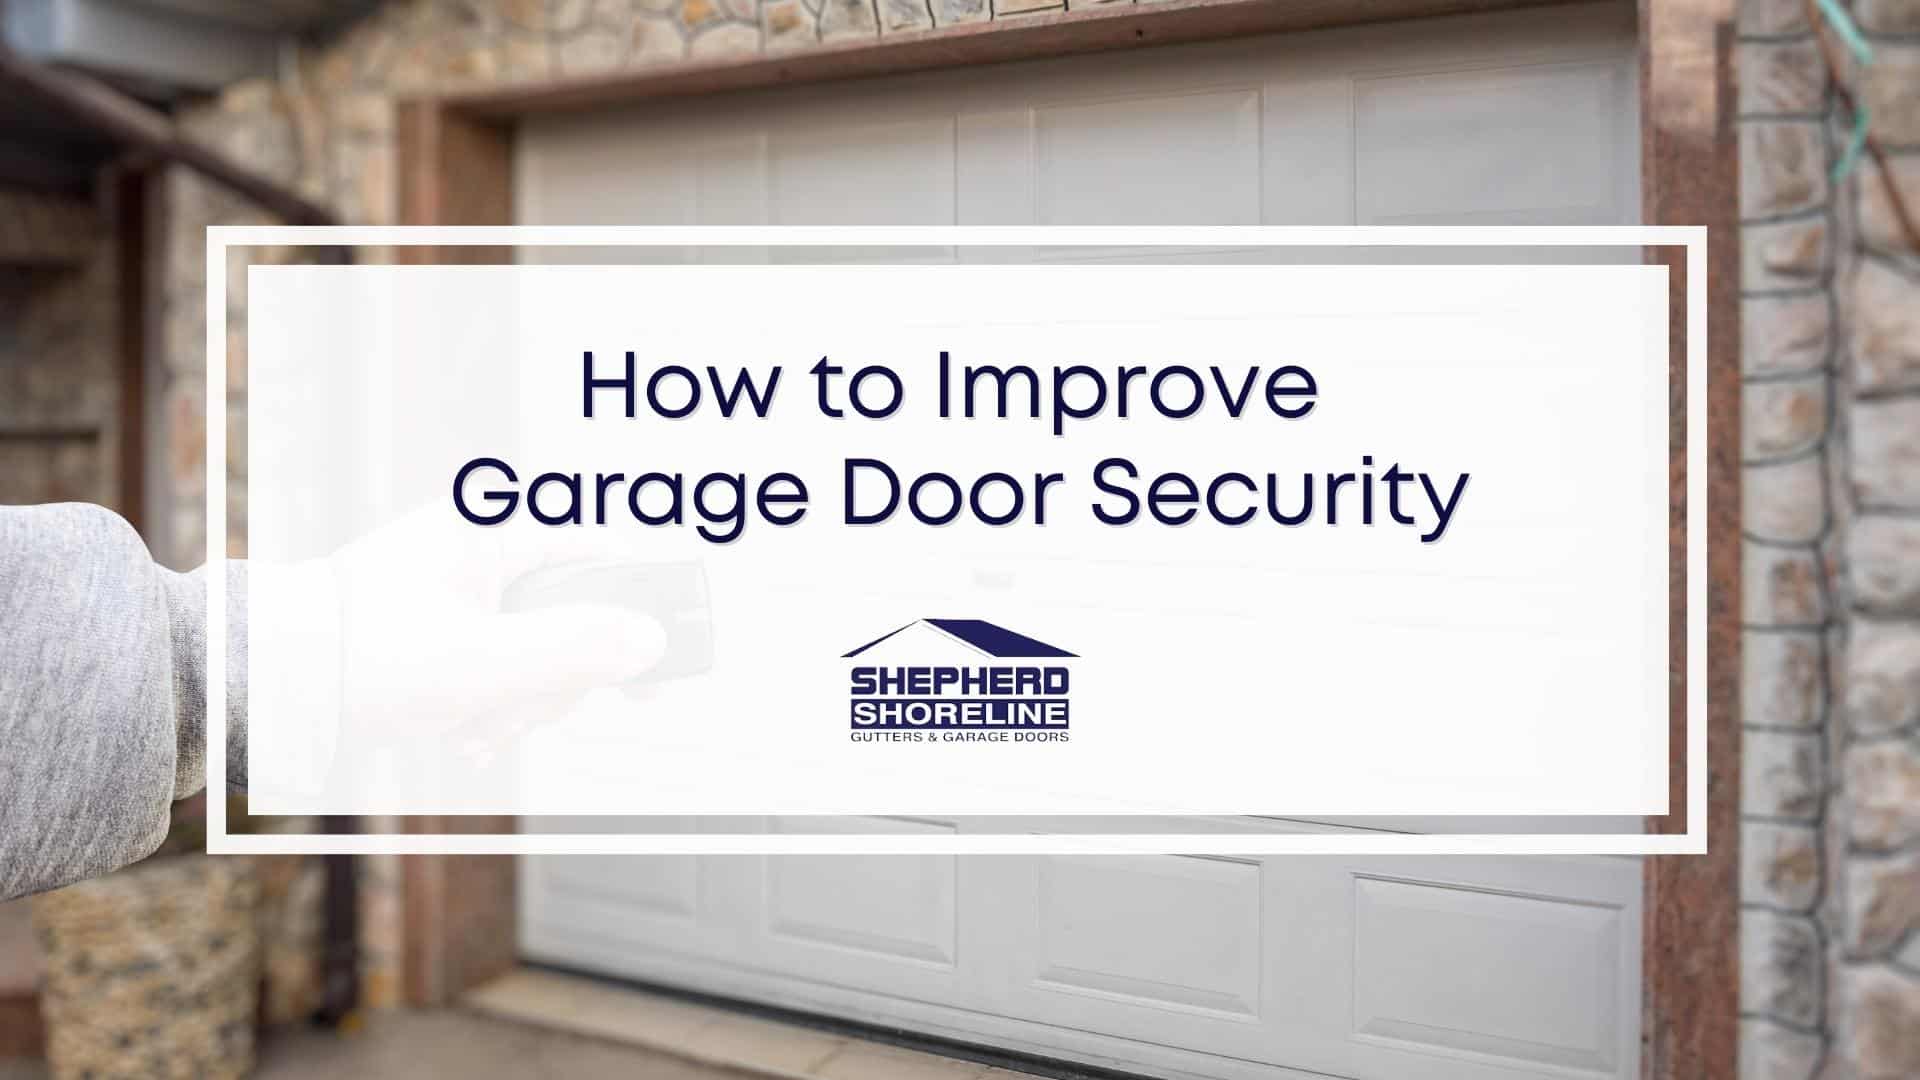 Featured image of how to improve garage door security